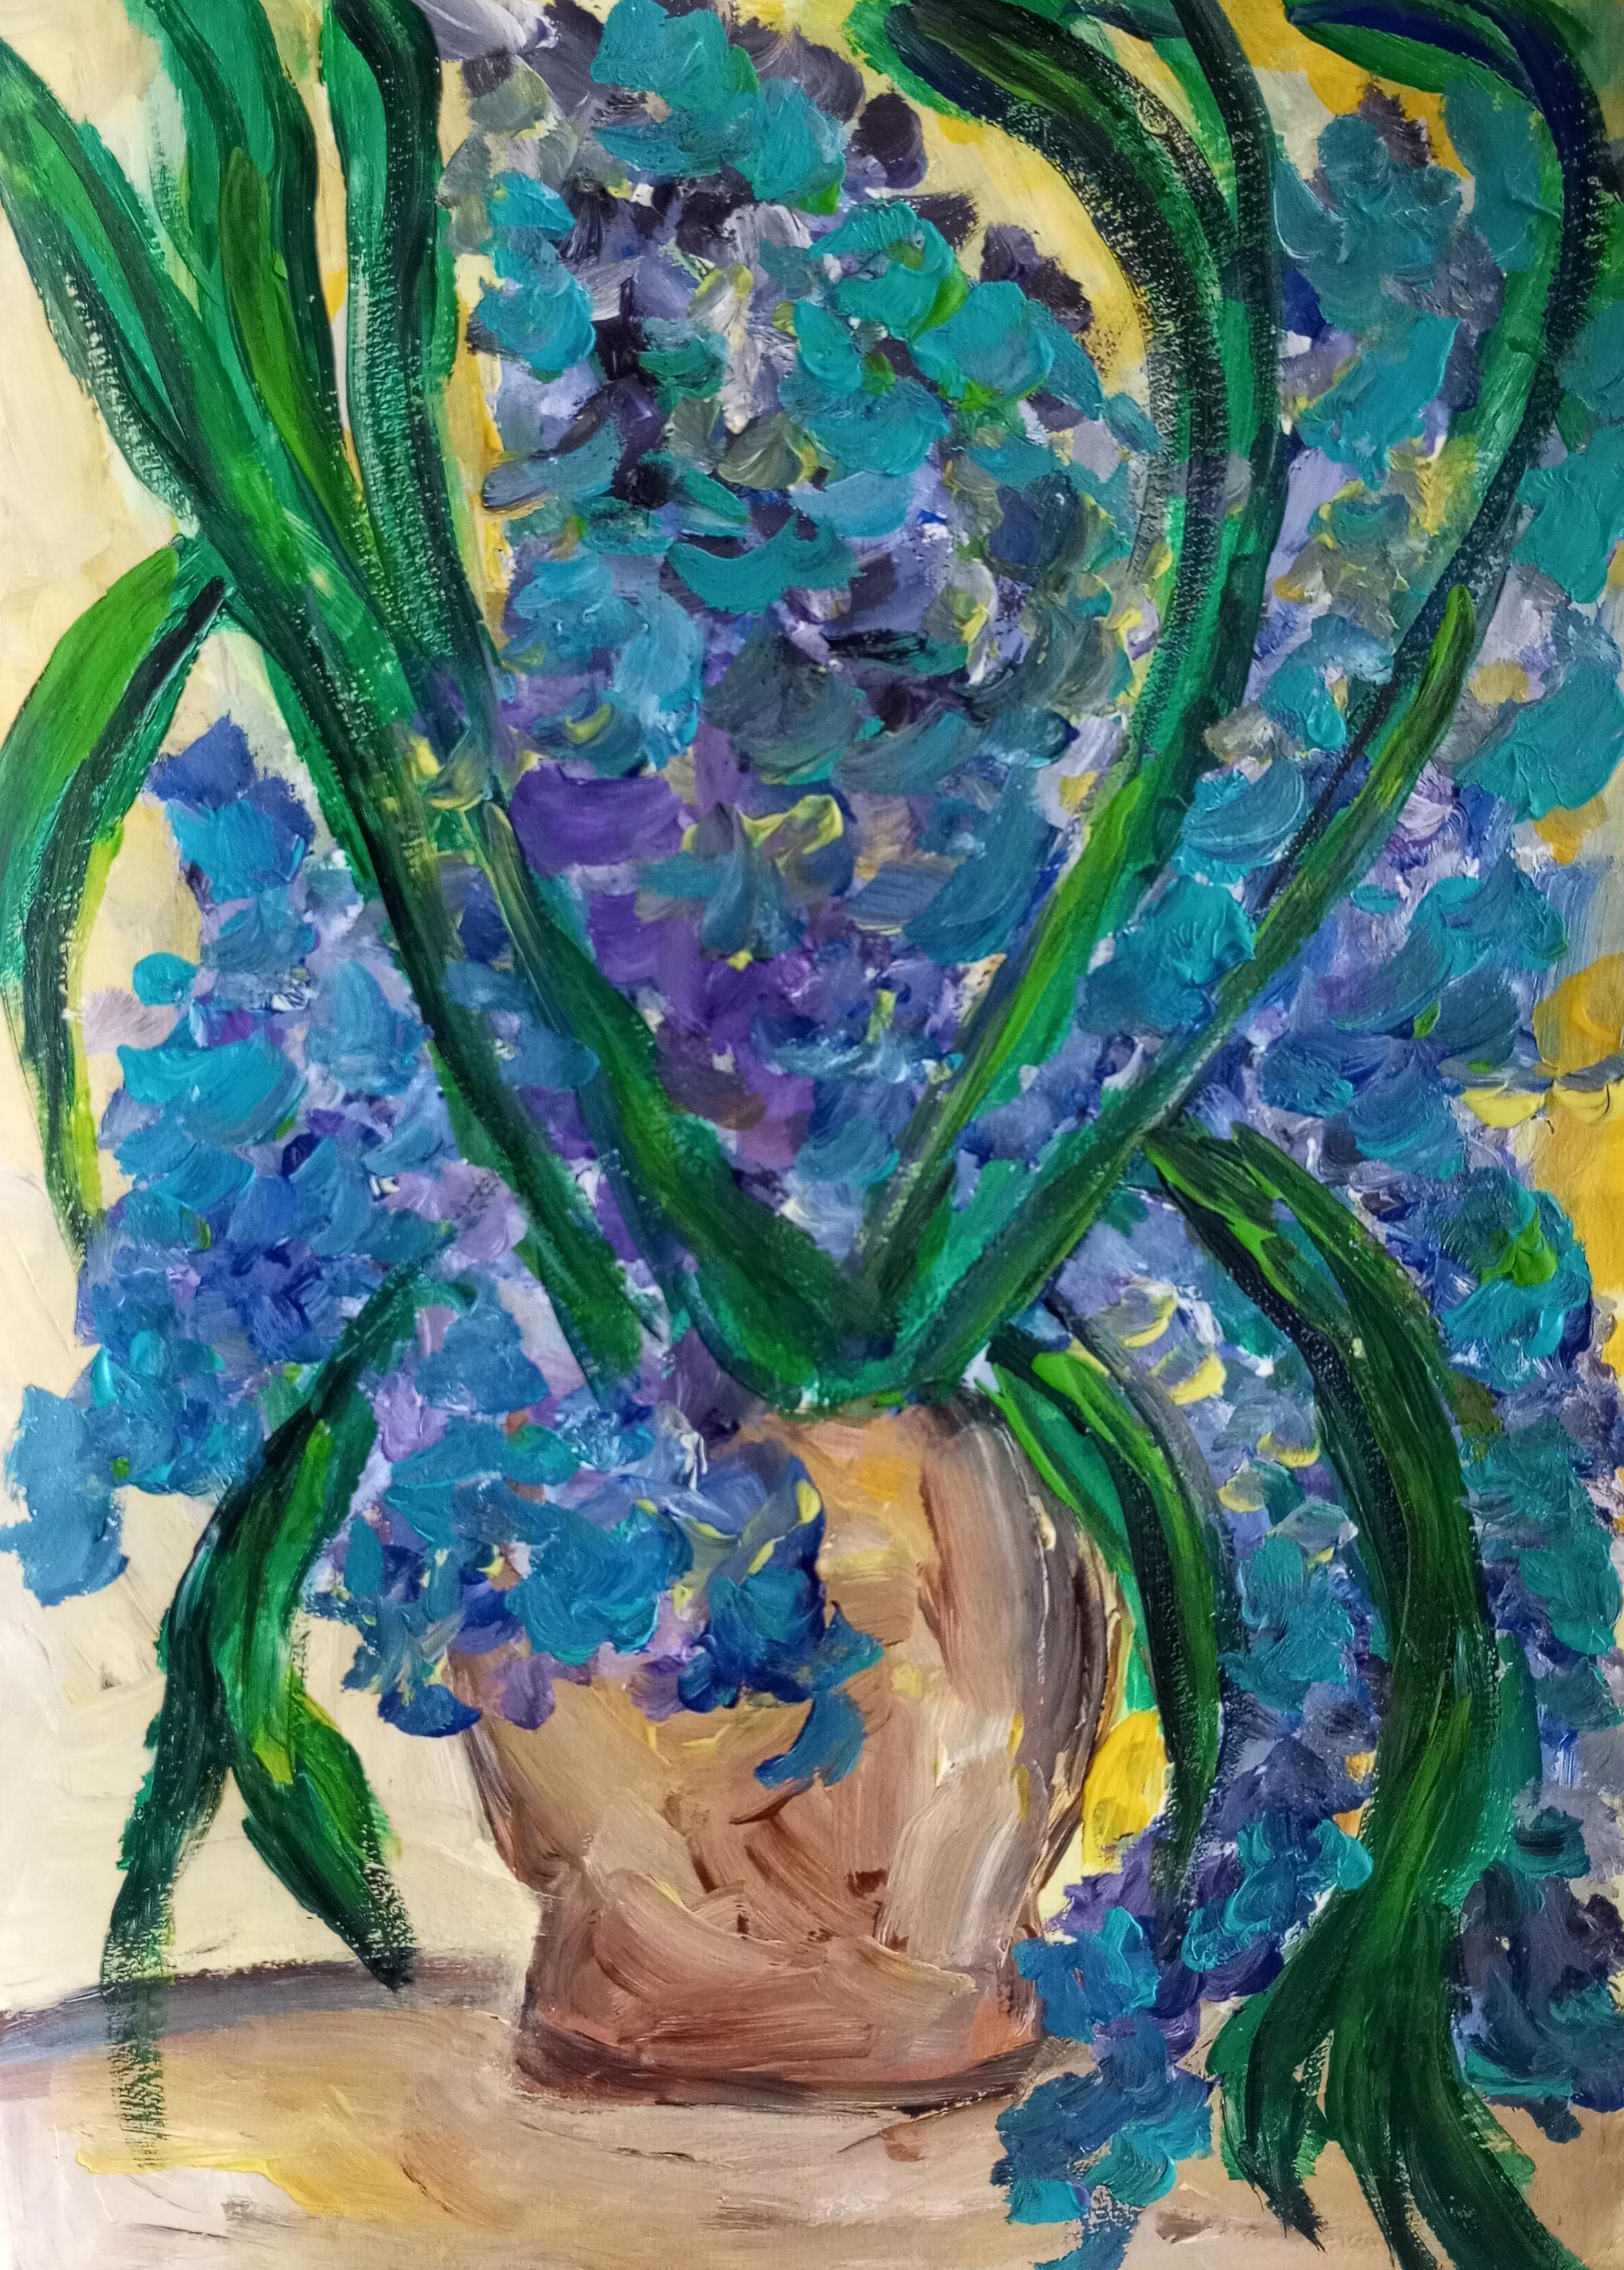 Irises in a terracotta pot